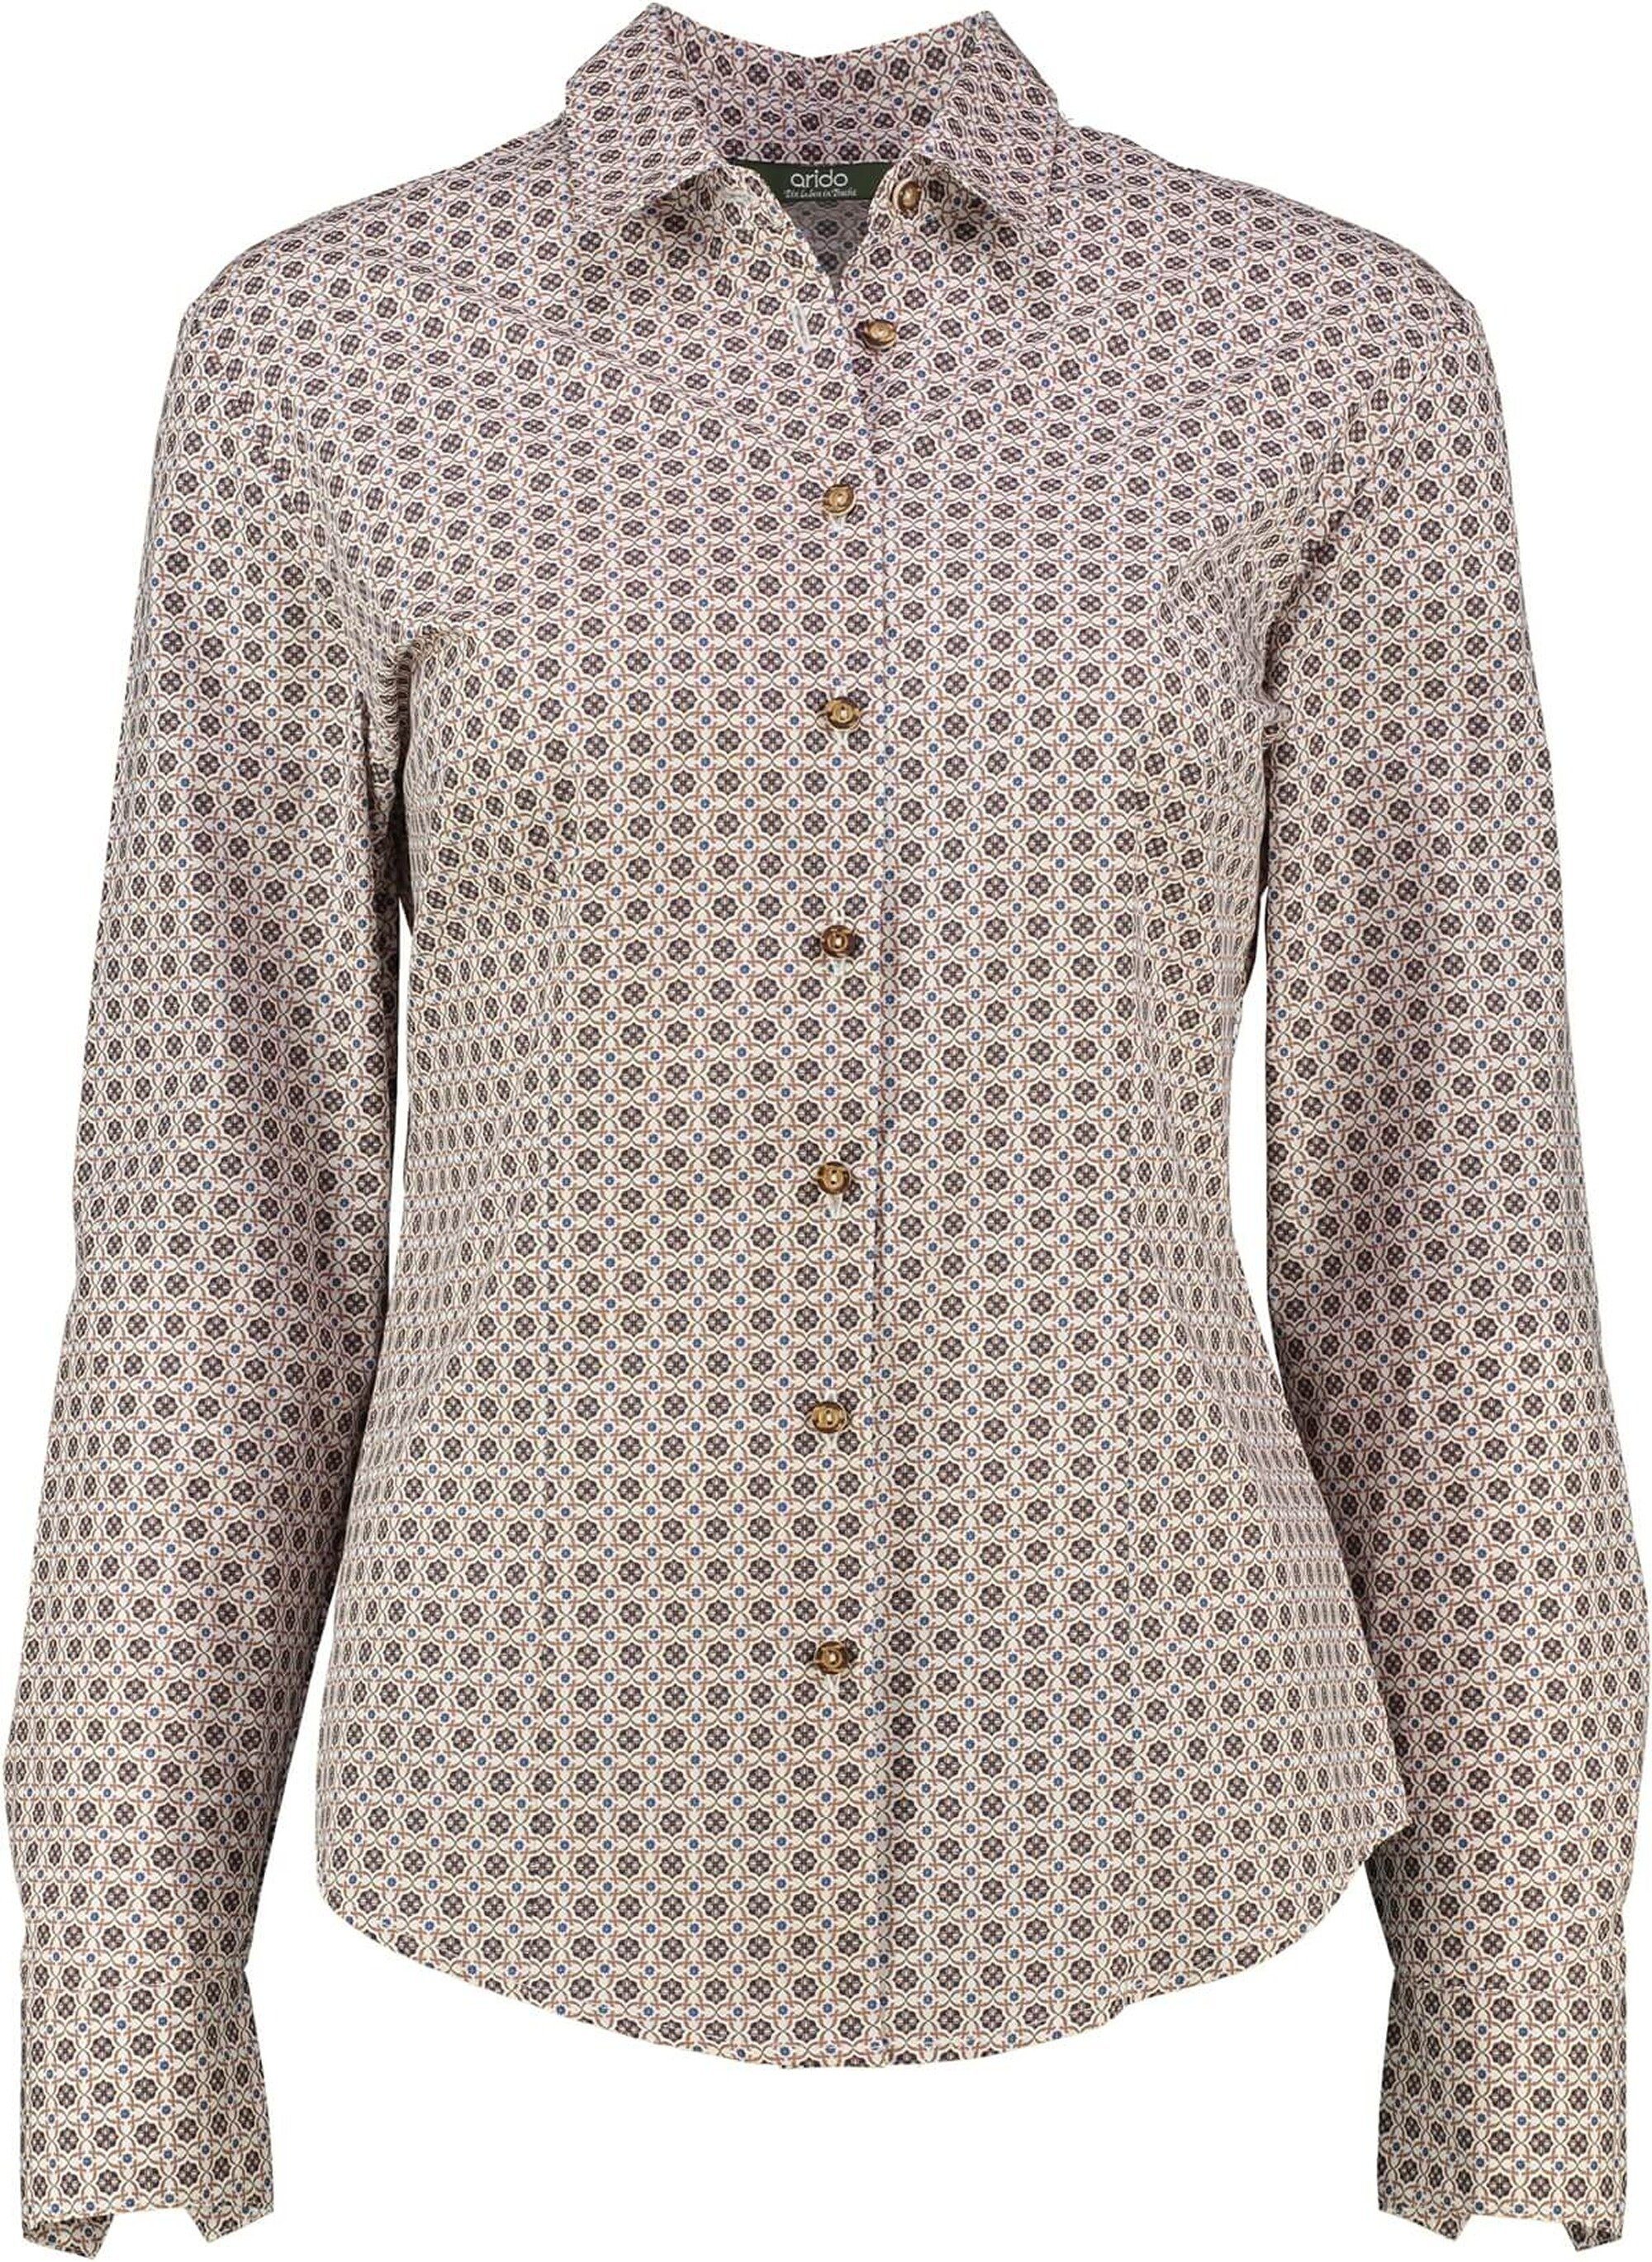 arido Klassische hochwertiger ARIDO Natur-Qualität Bluse Bluse in beige